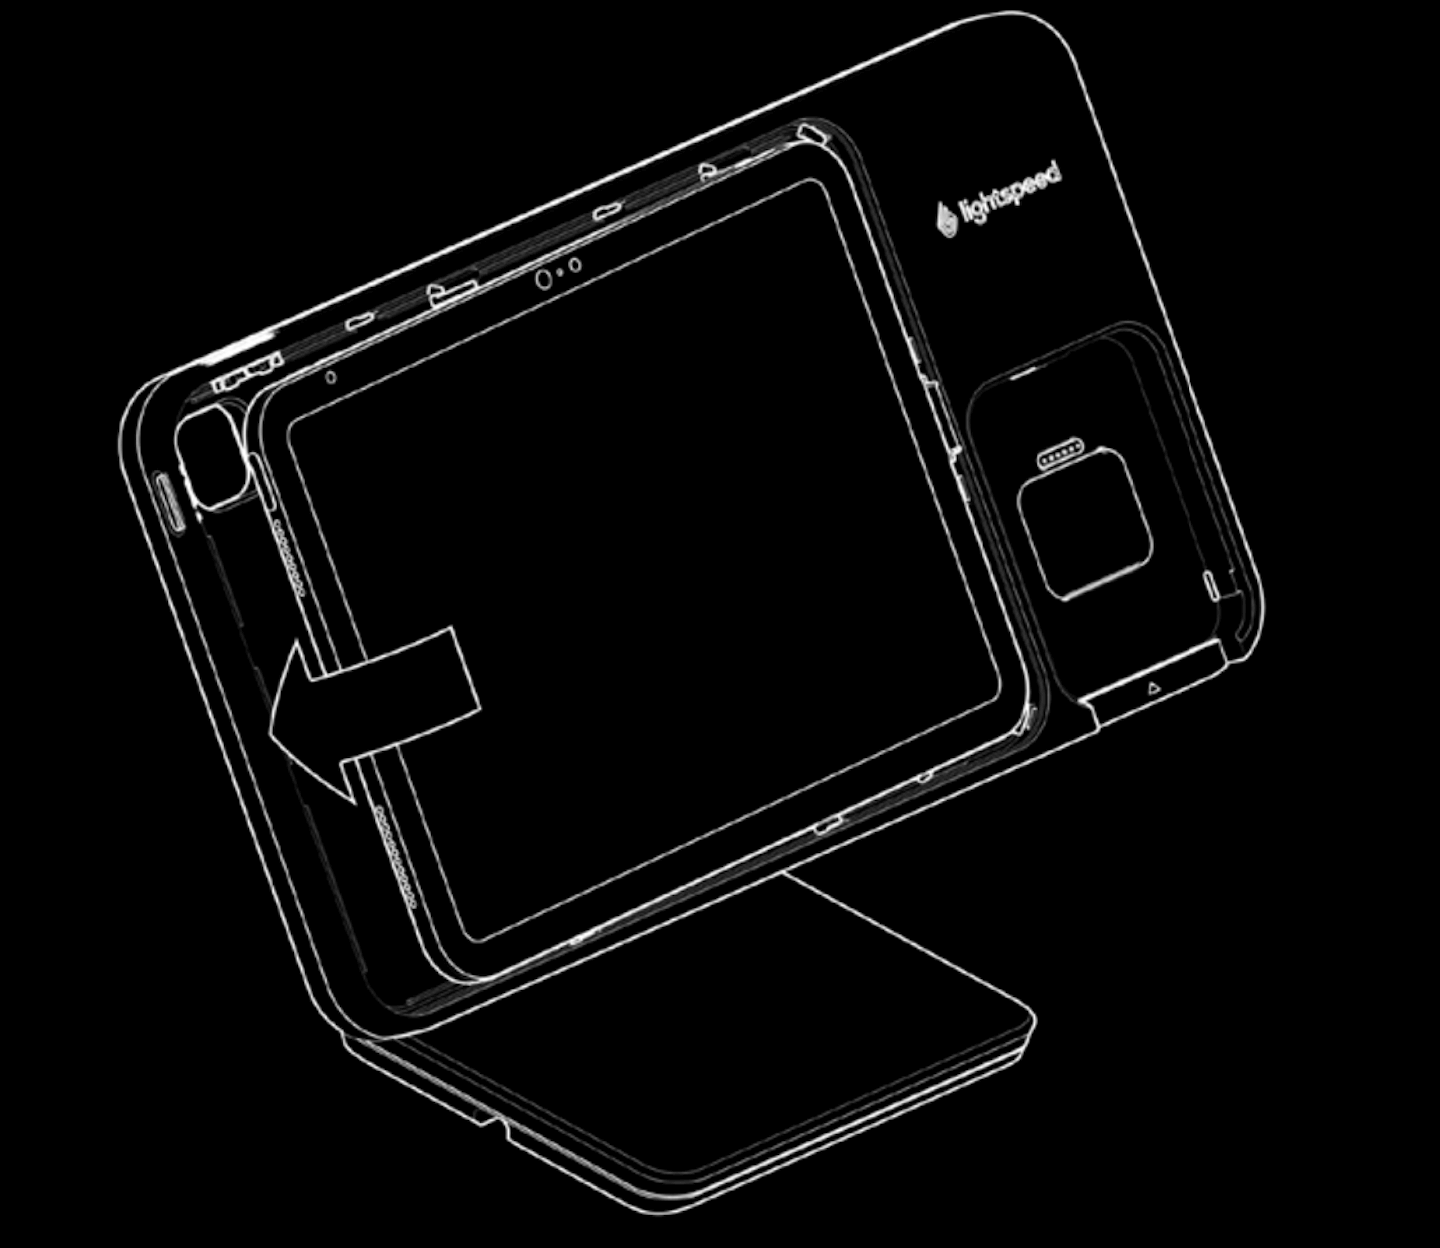 Afbeelding van een Lightspeed-standaard waarin een iPad is geplaatst. Een pijl geeft aan dat de iPad recht tegen de standaard aan wordt geduwd.